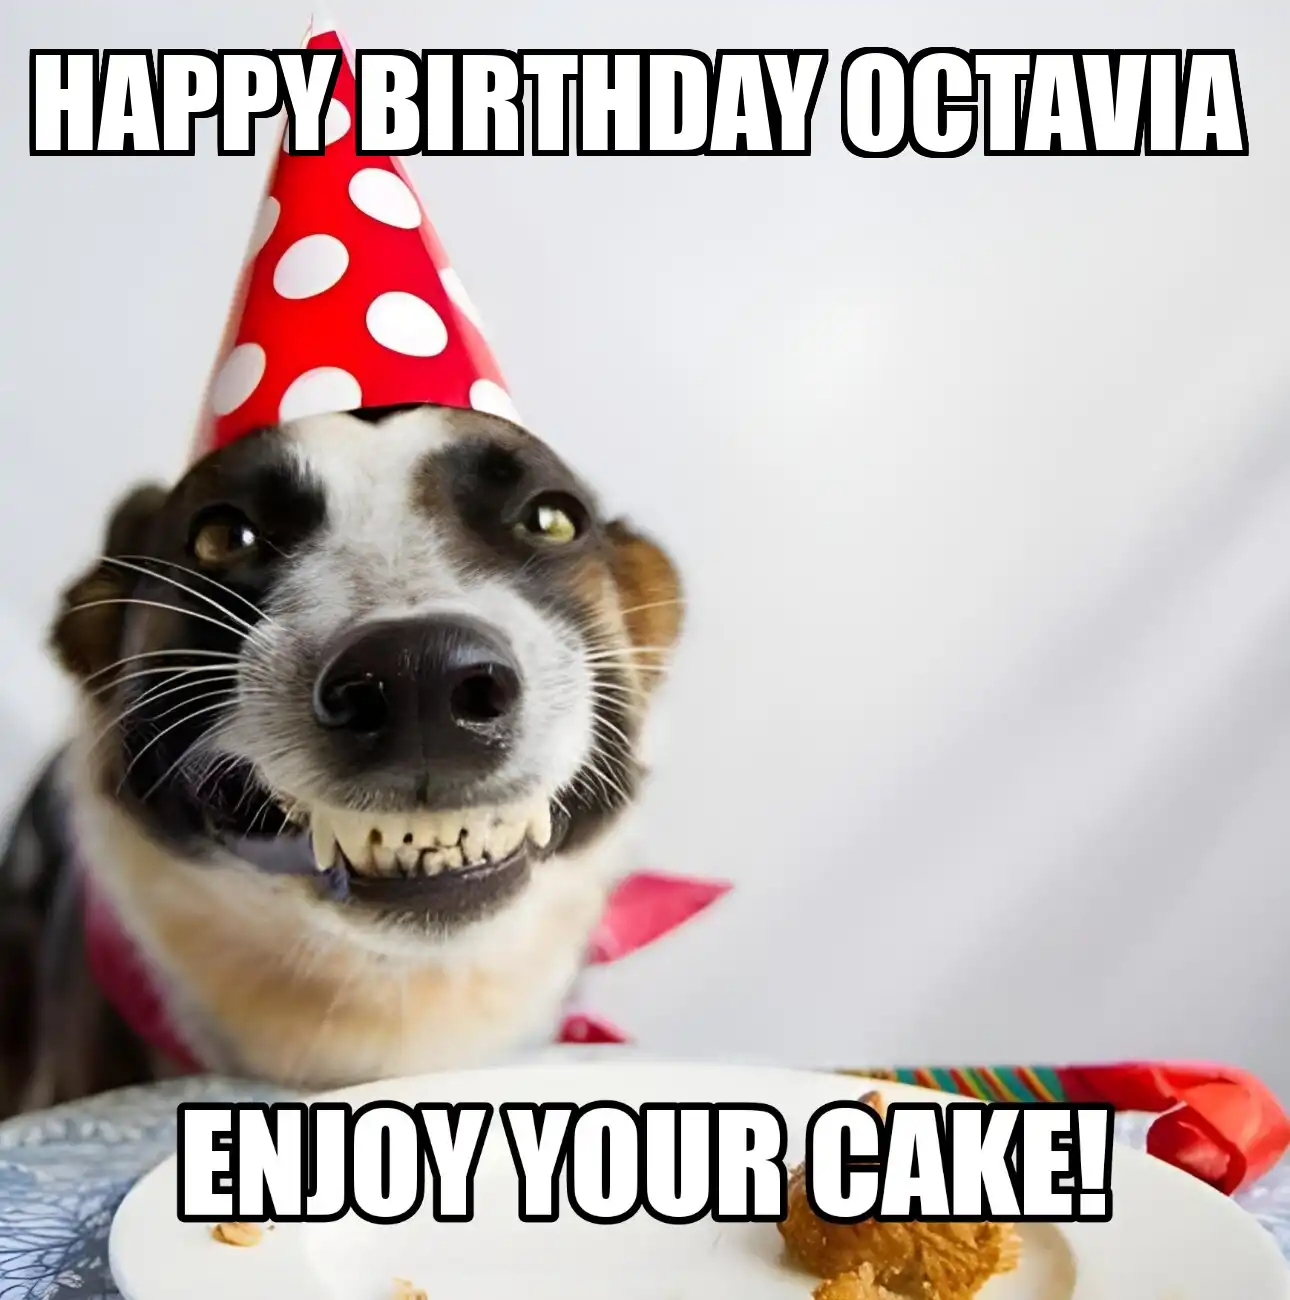 Happy Birthday Octavia Enjoy Your Cake Dog Meme